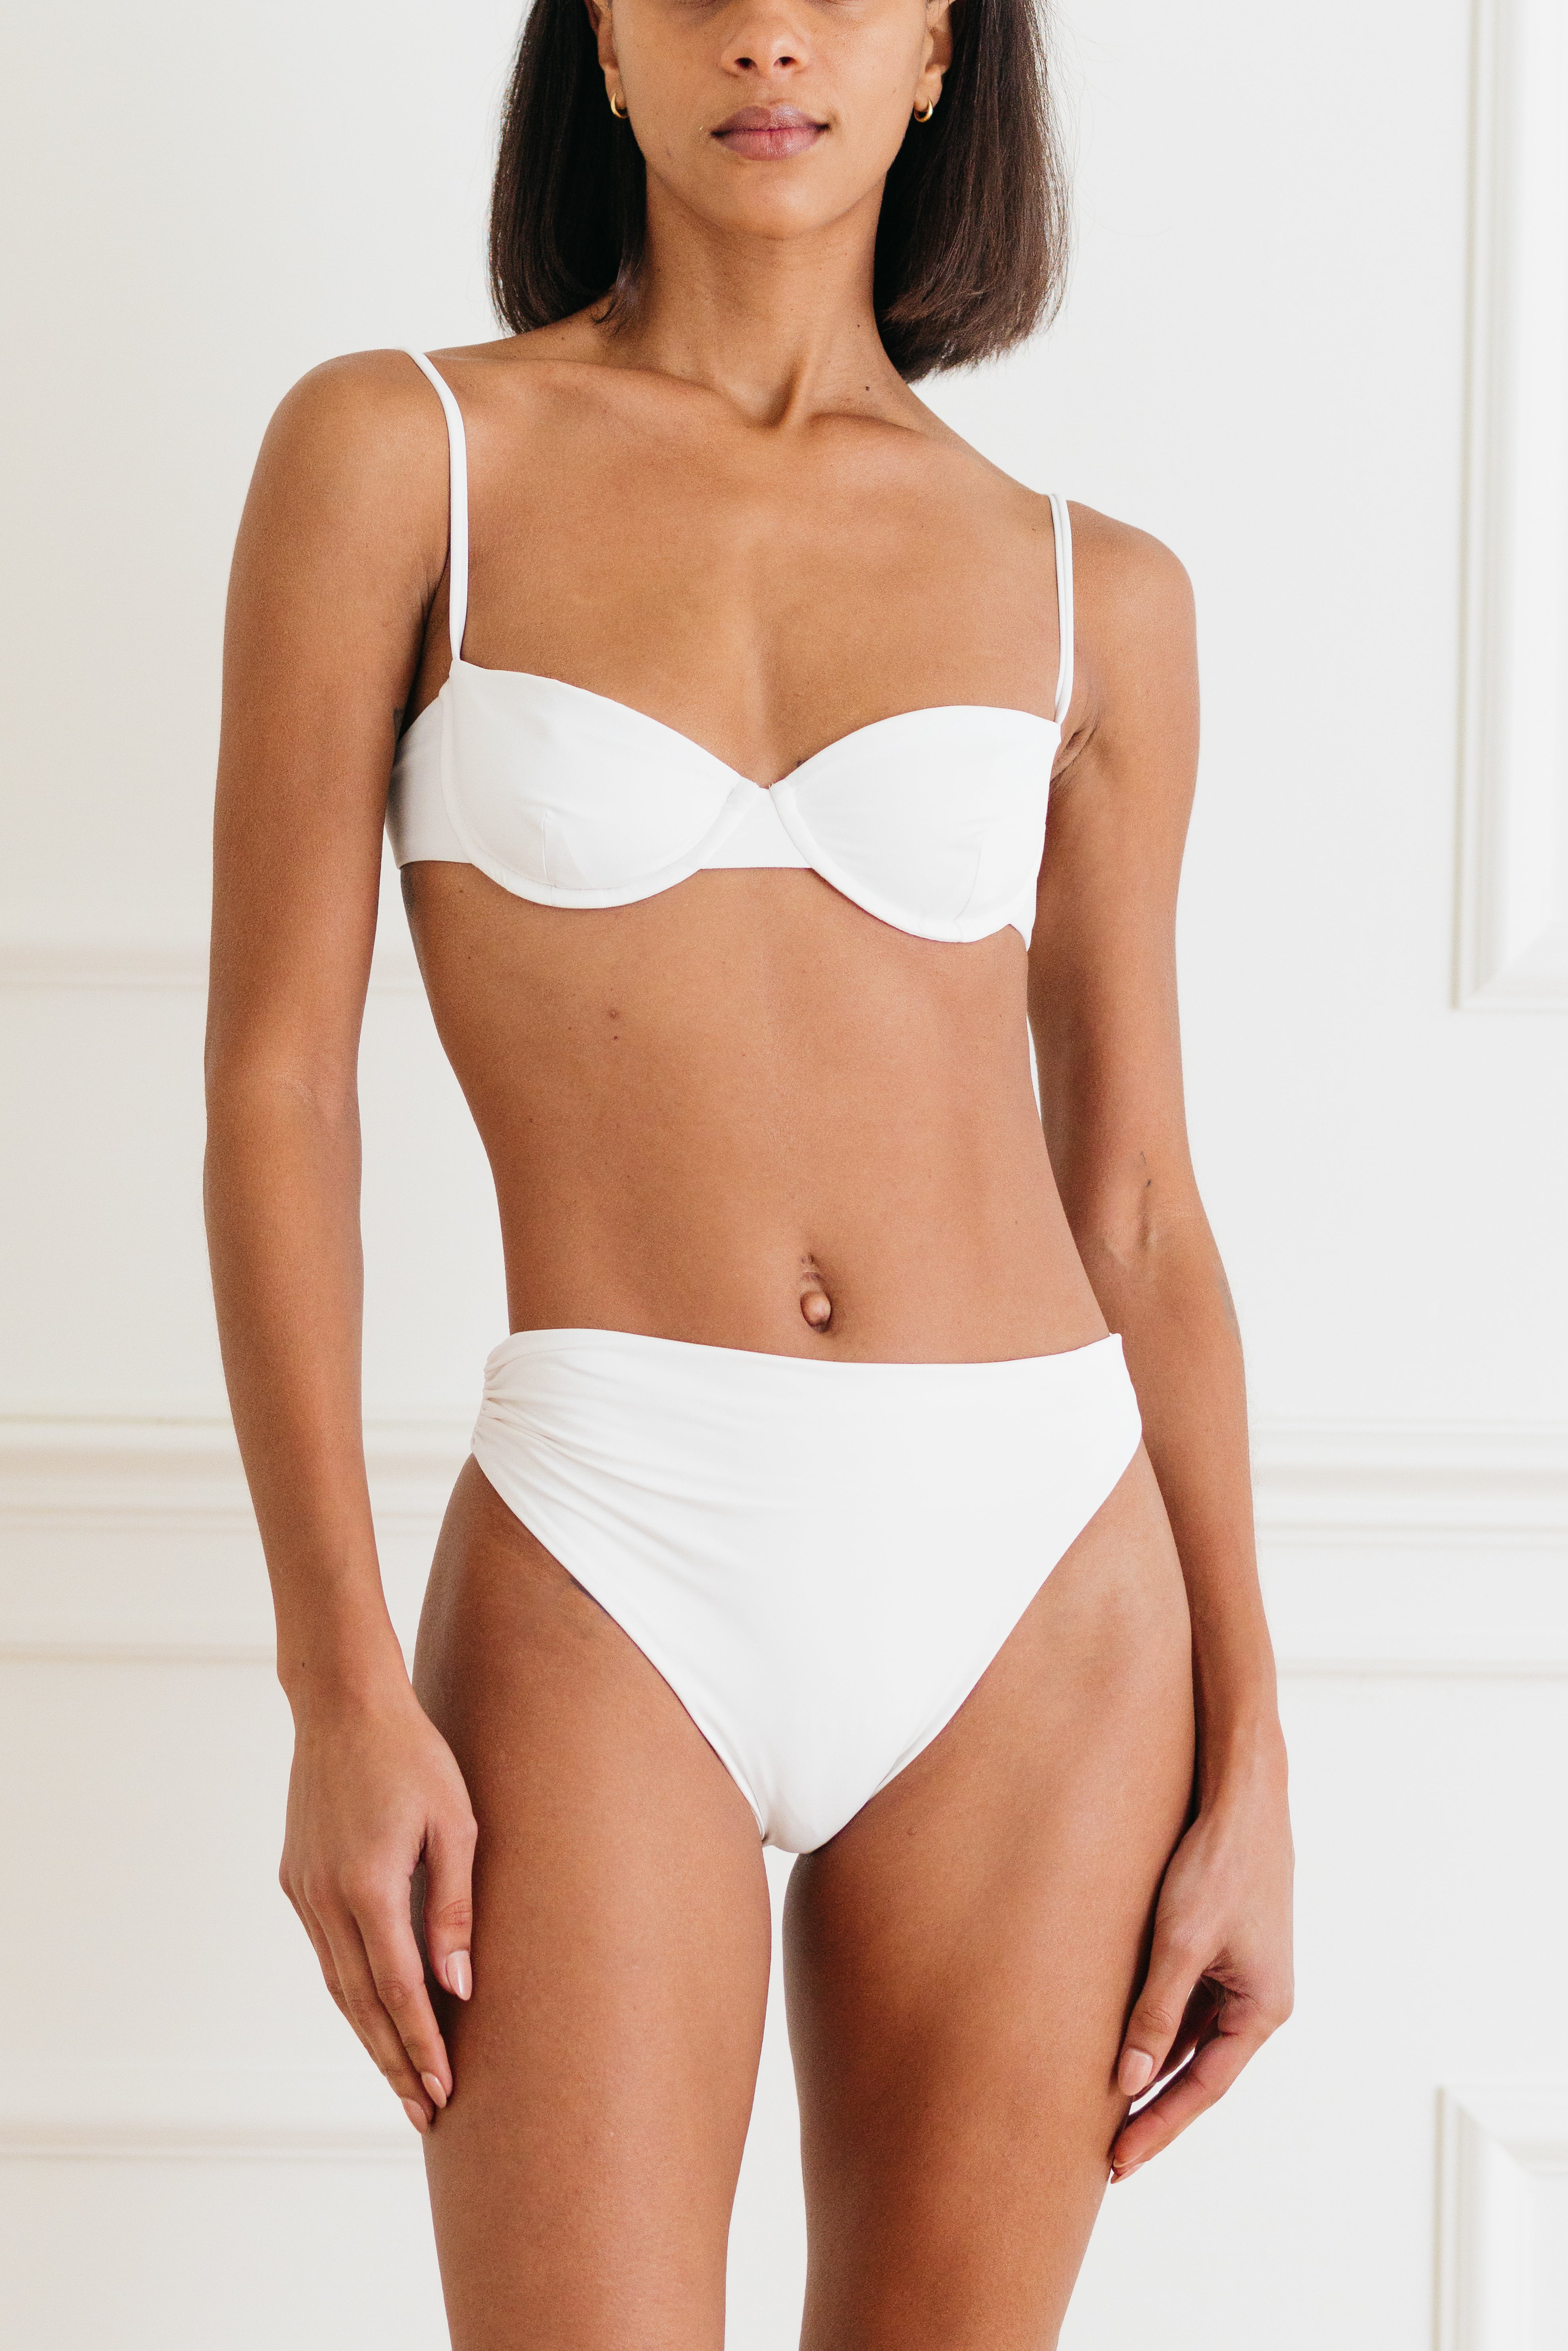 The White Balconette Underwire Bikini Top